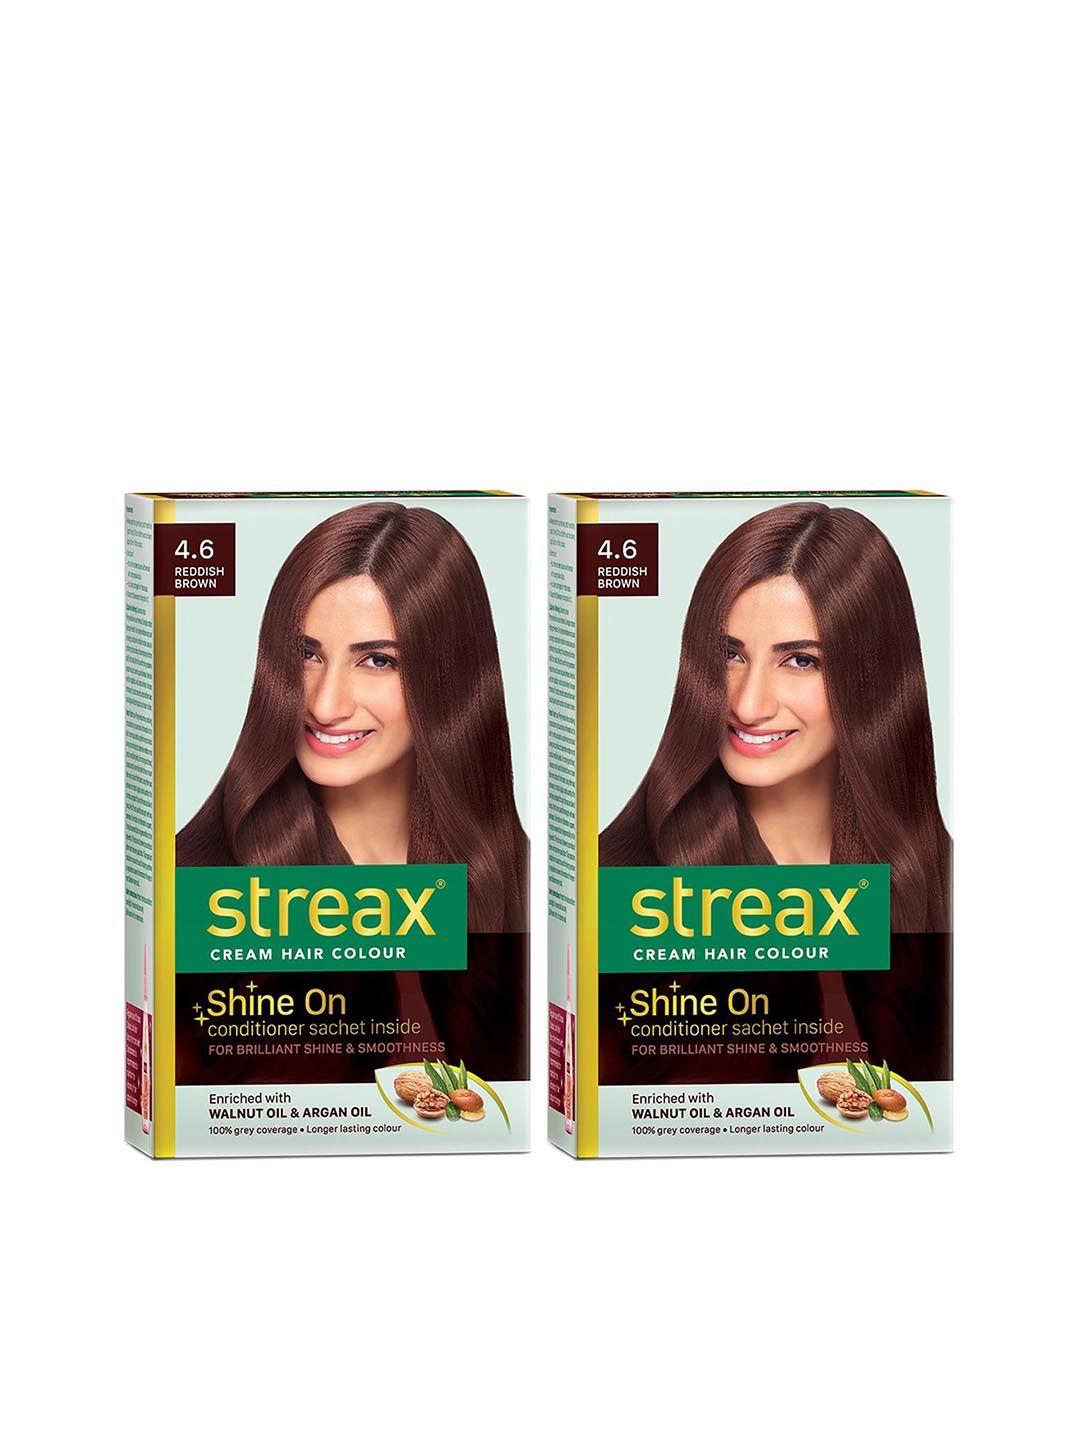 streax set of 2 cream hair colour - 4.6 reddish brown 120ml each